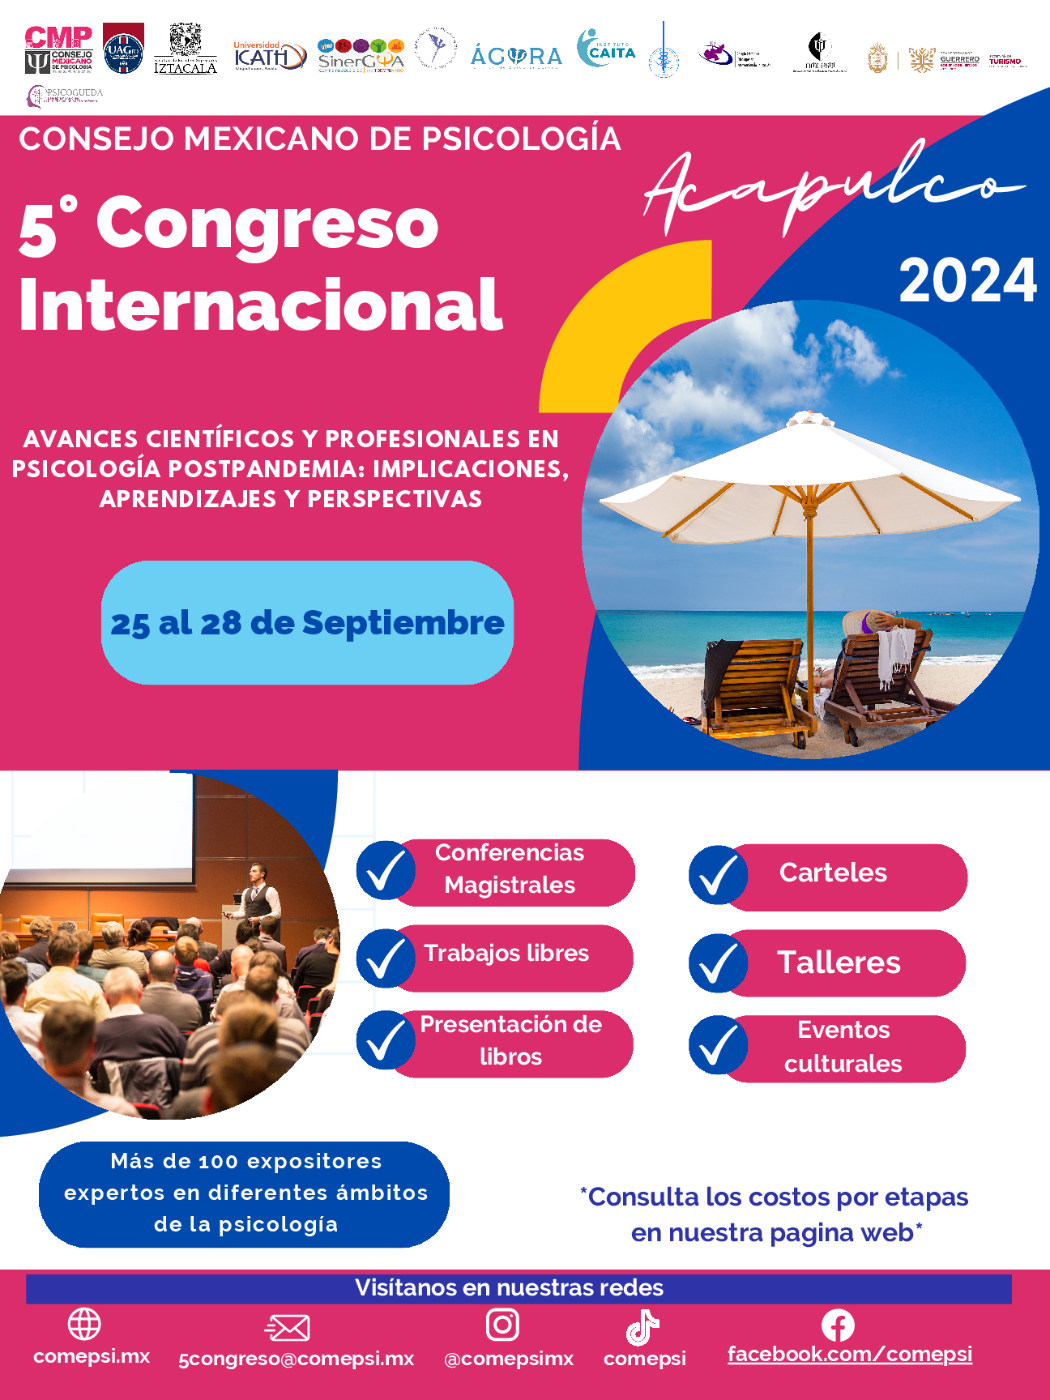 5° Congreso Internacional del CMP